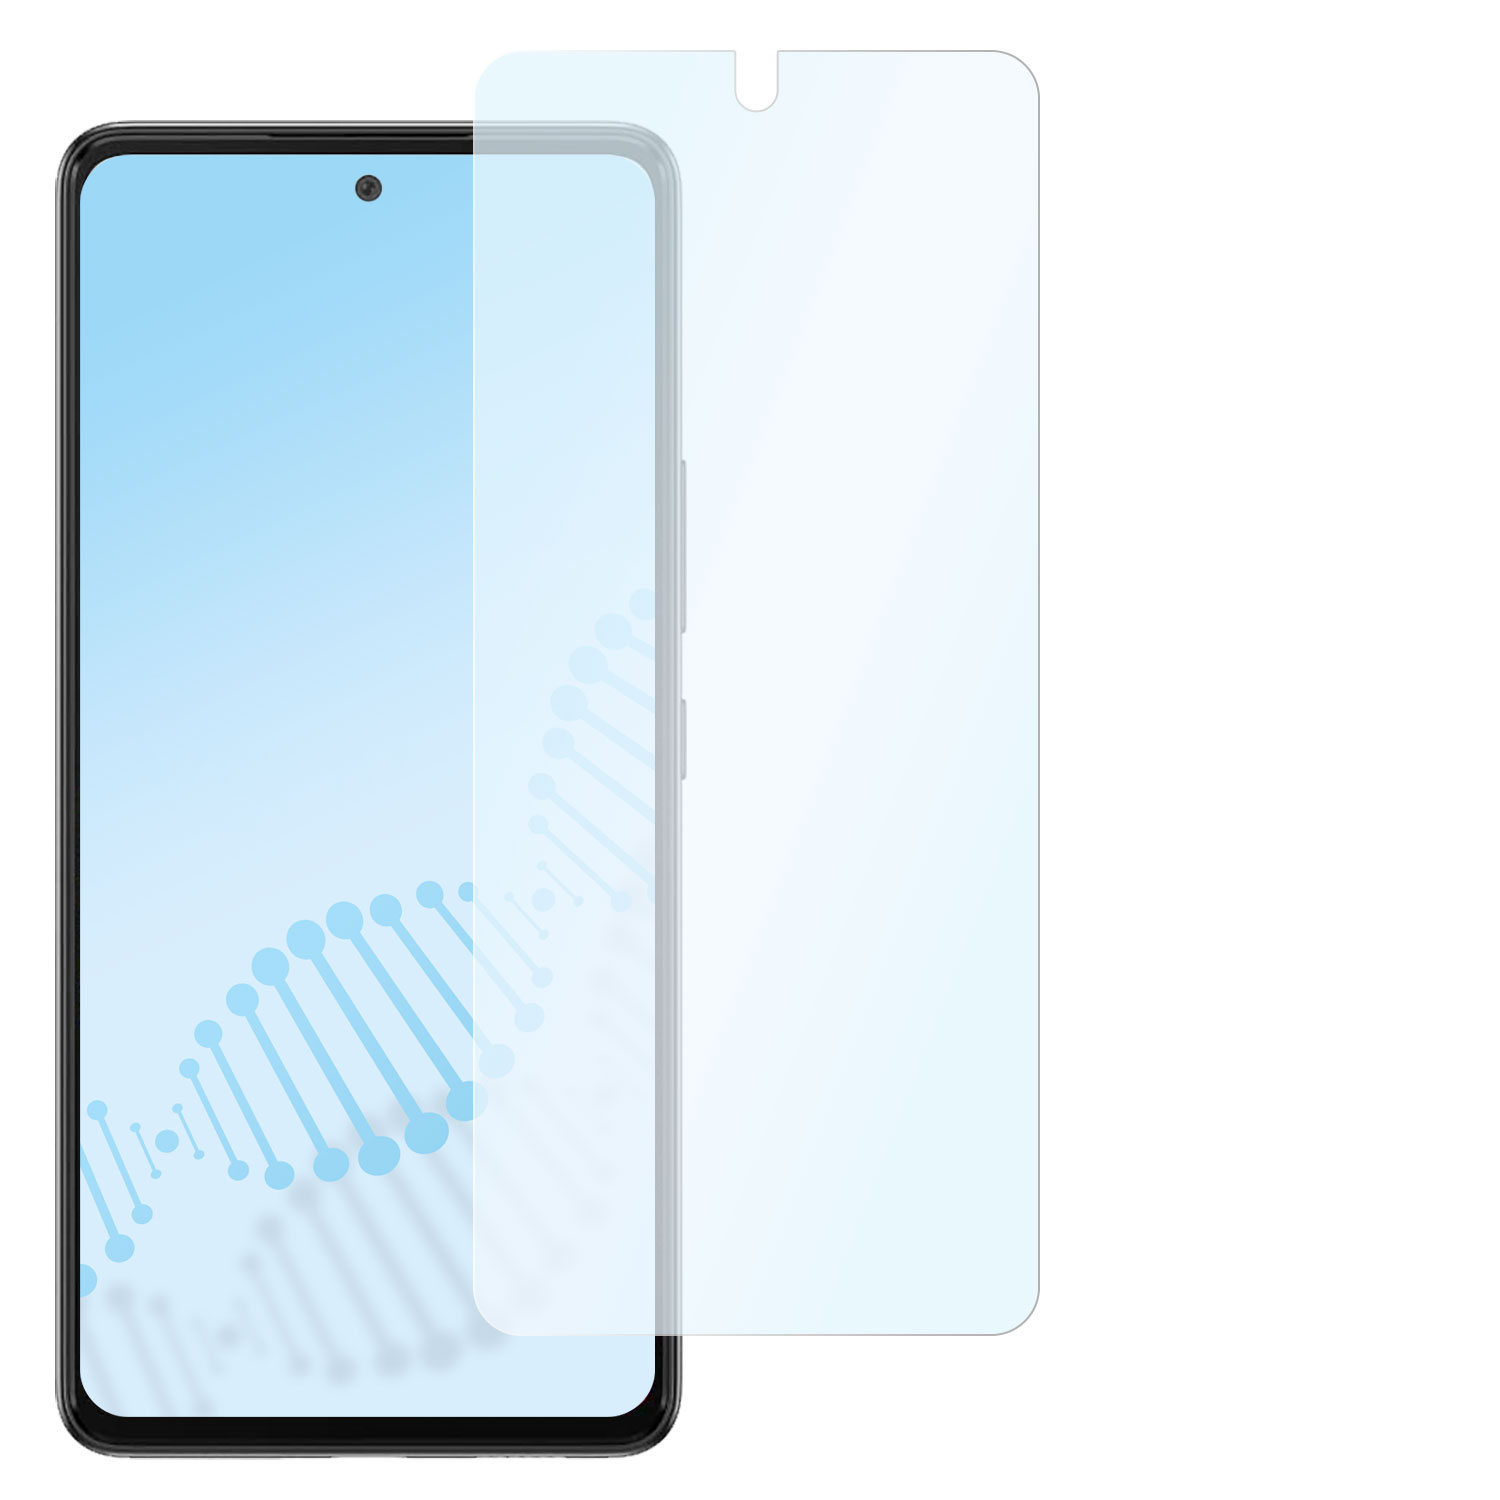 SLABO antibakteriell flexibles Hybridglas Displayschutz(für 5G) Galaxy Samsung A33